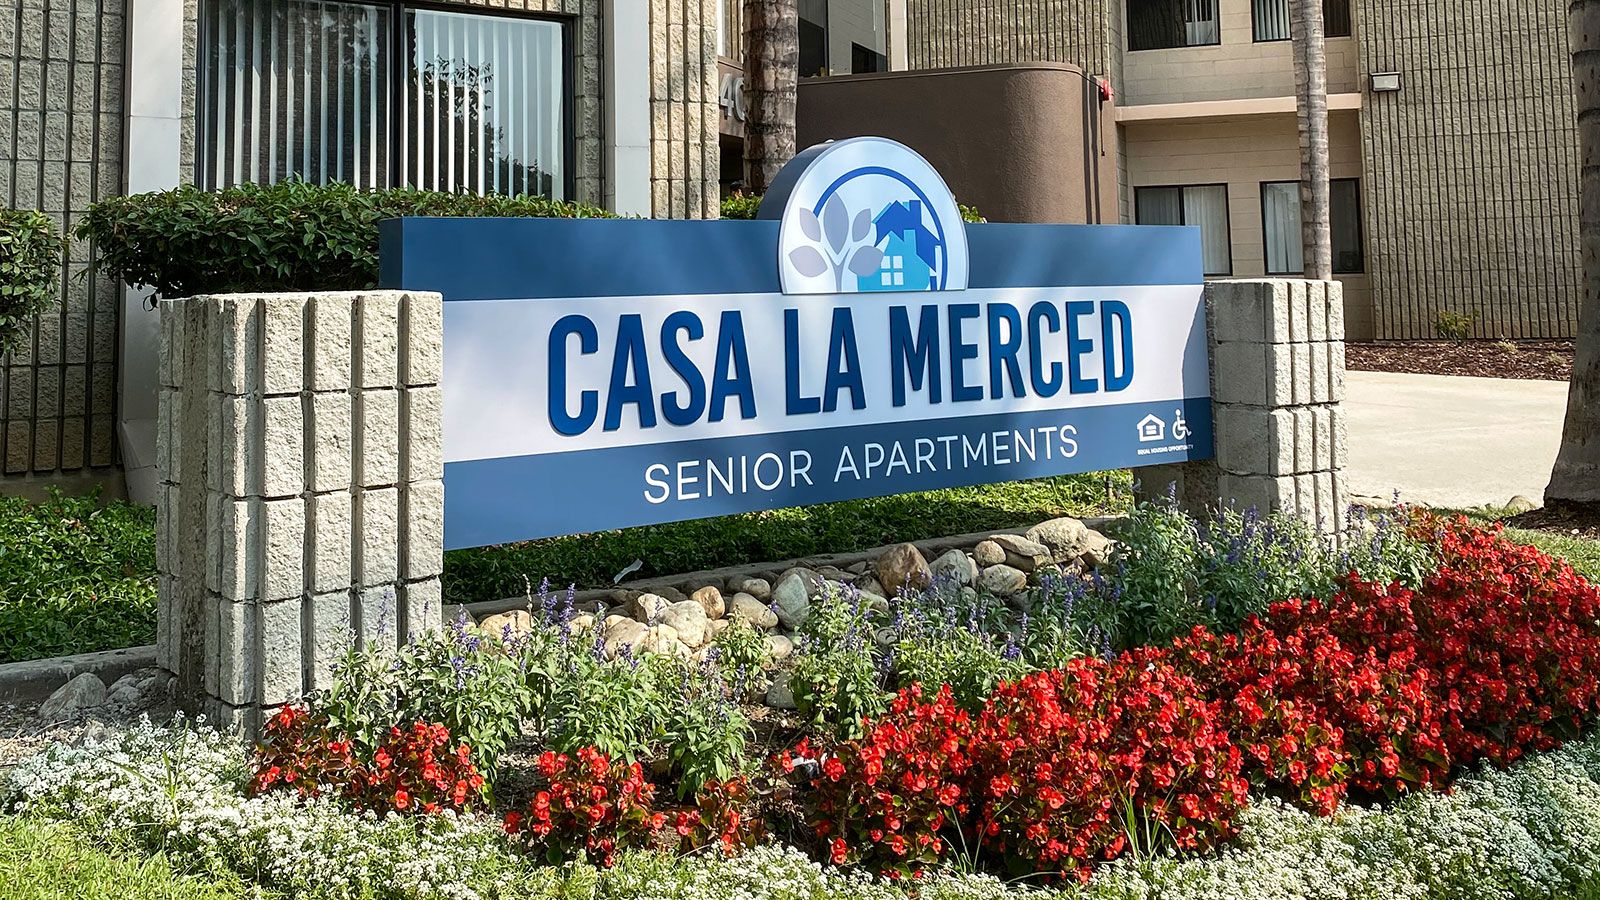 Casa LA Merced architectural sign